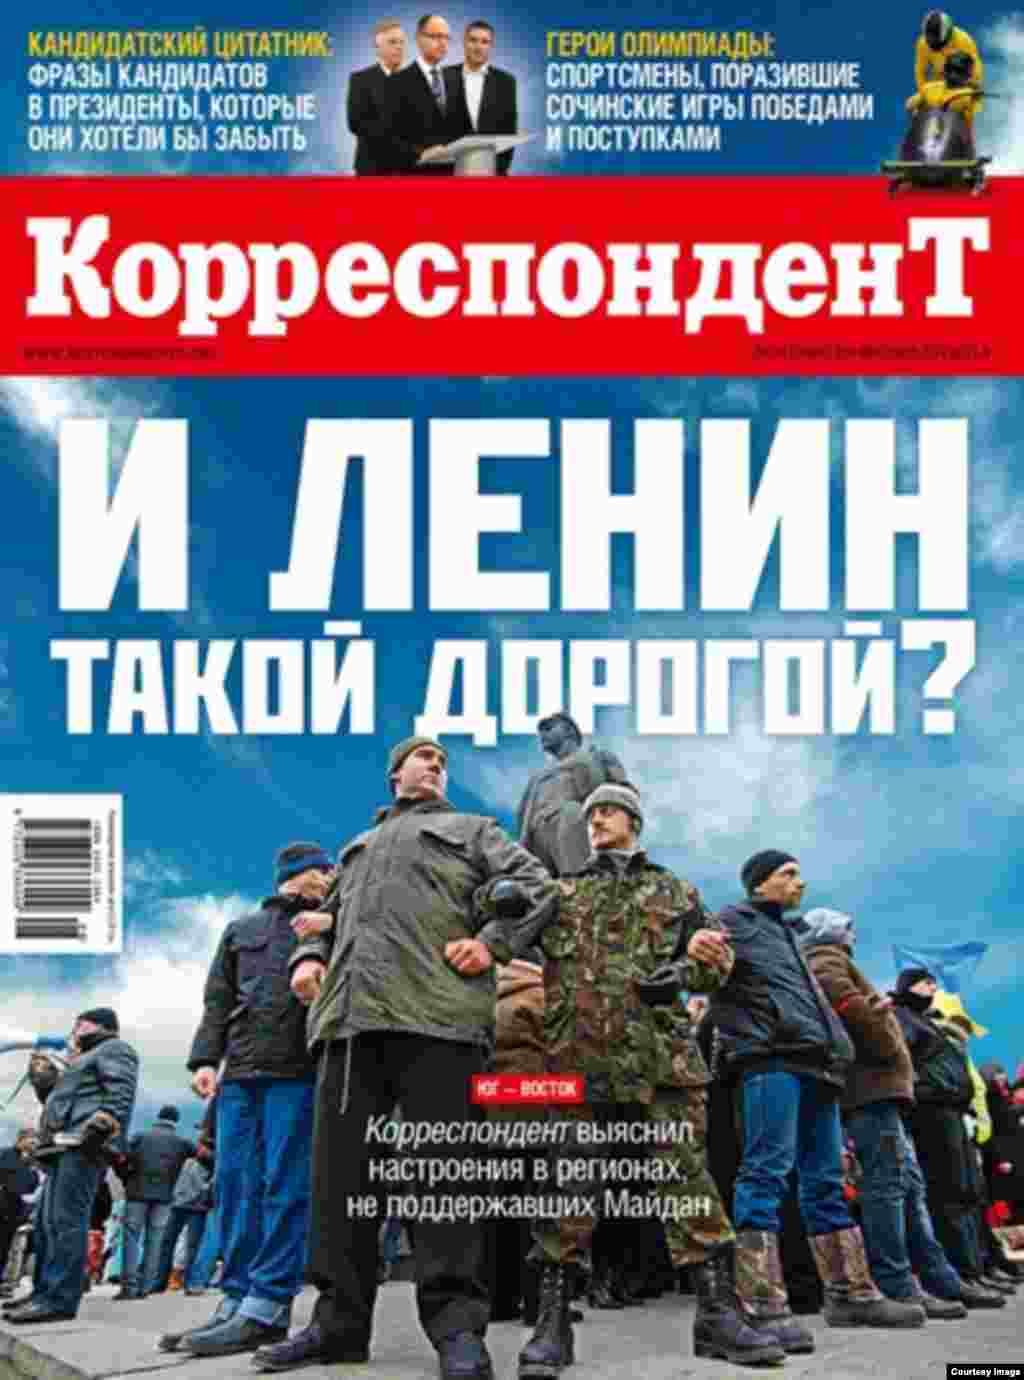 Український журнал &laquo;Кореспондент&raquo;: &laquo;І Ленін такий дорогий. Південь &ndash; Схід. Кореспондент з&#39;ясував настрої в регіонах, які не підтримали Майдан&raquo;